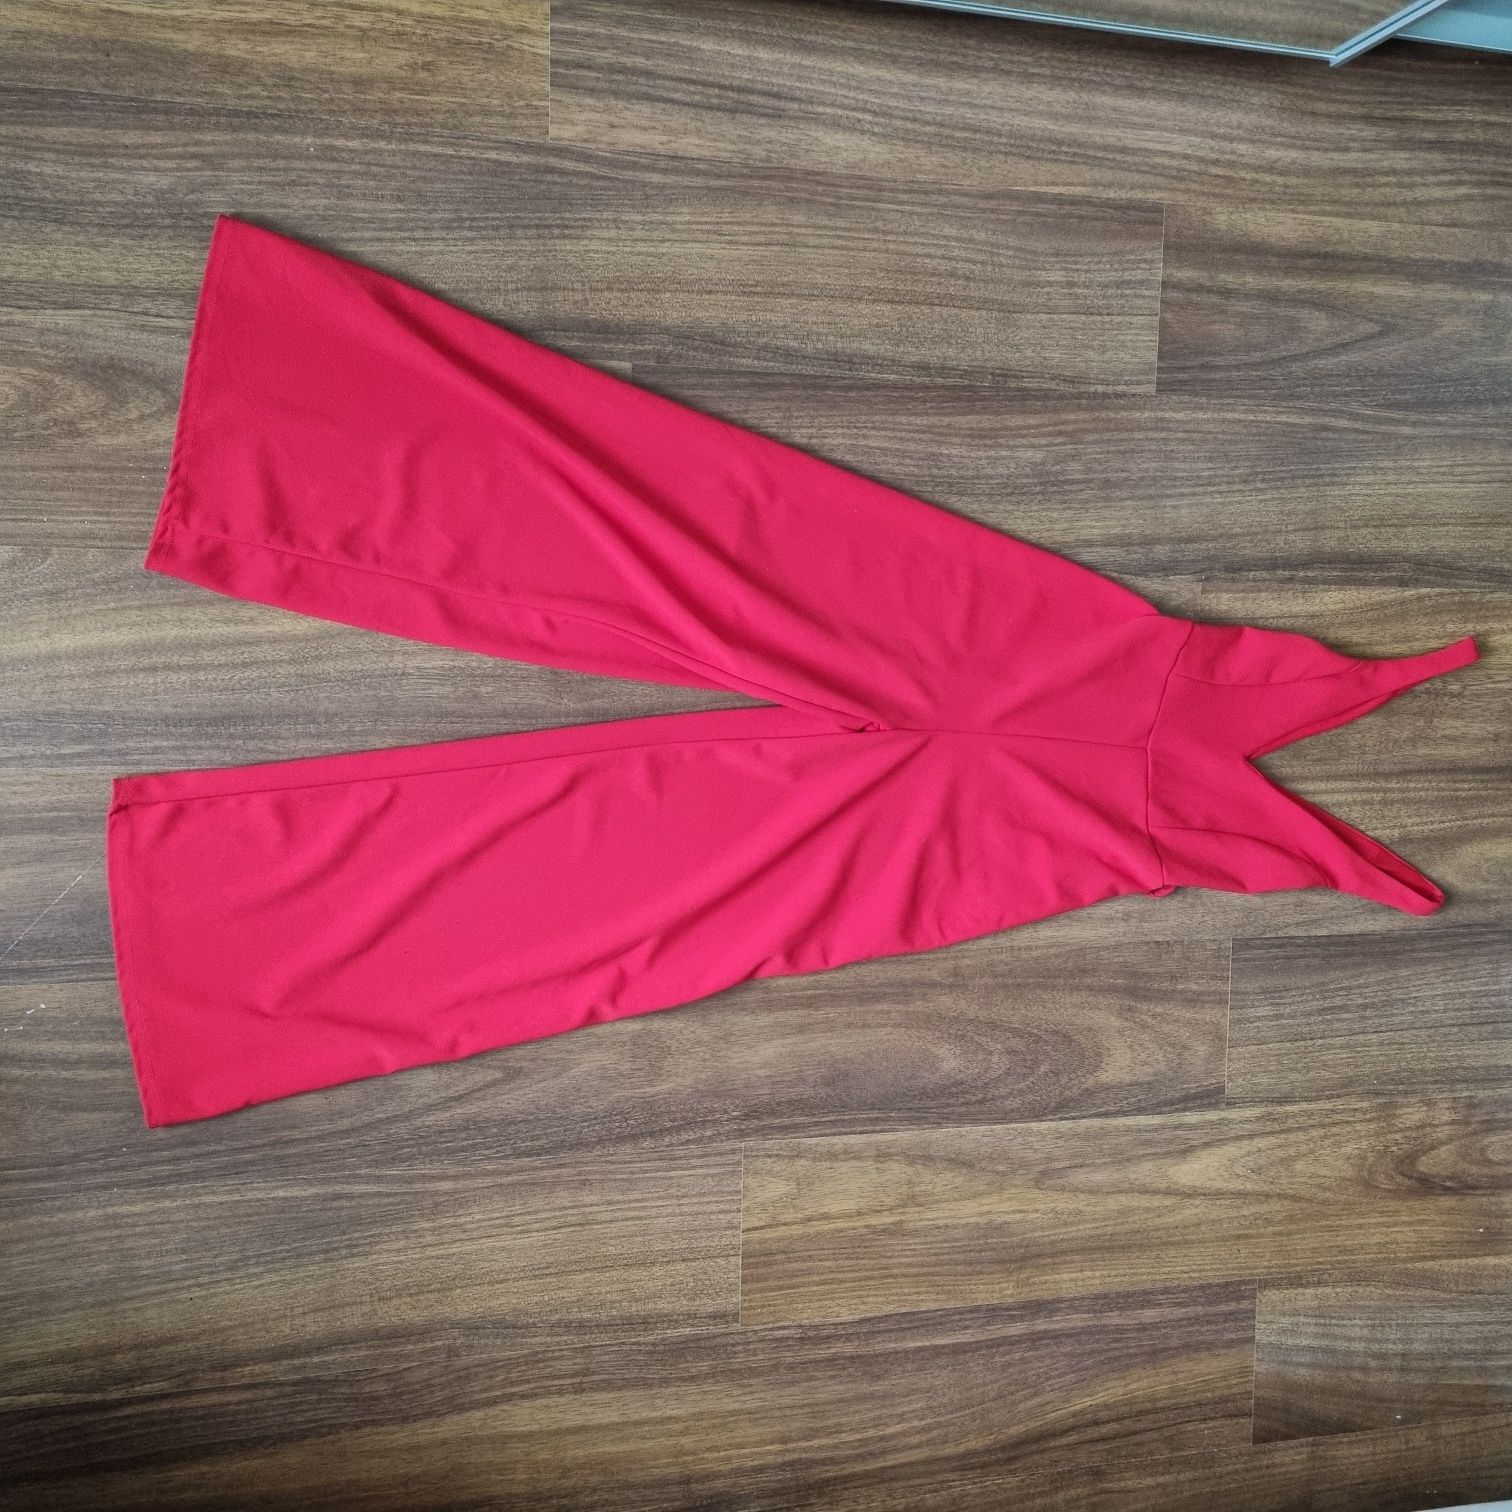 Kombinezon czerwony firmy New Look,rozmiar XS, szeroka nogawka